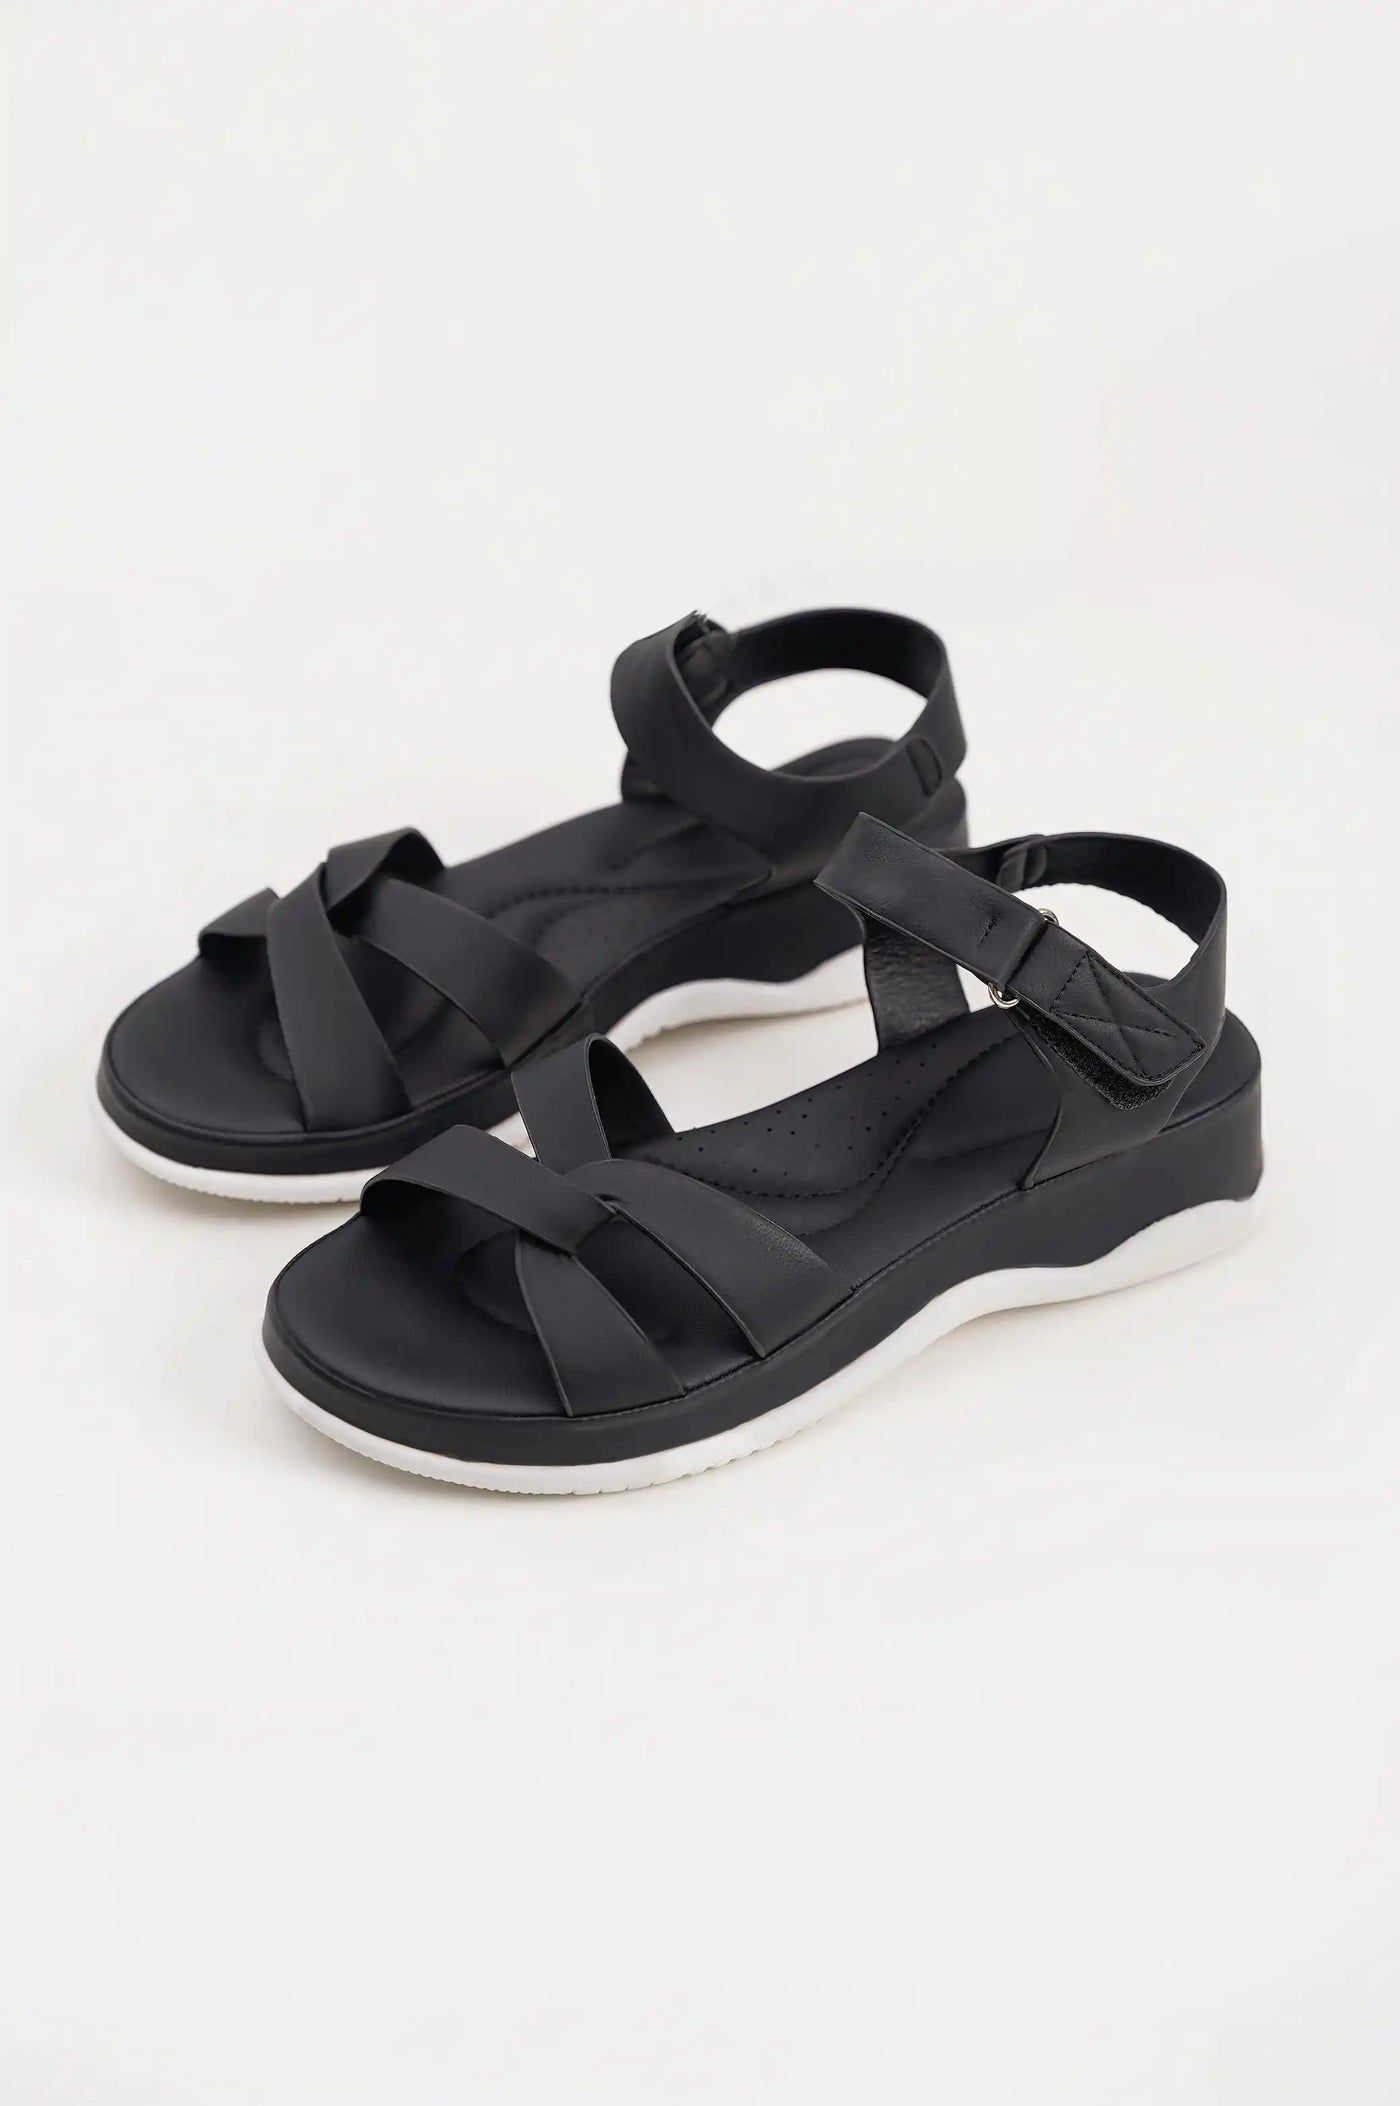 Black Criss-Cross Sandal